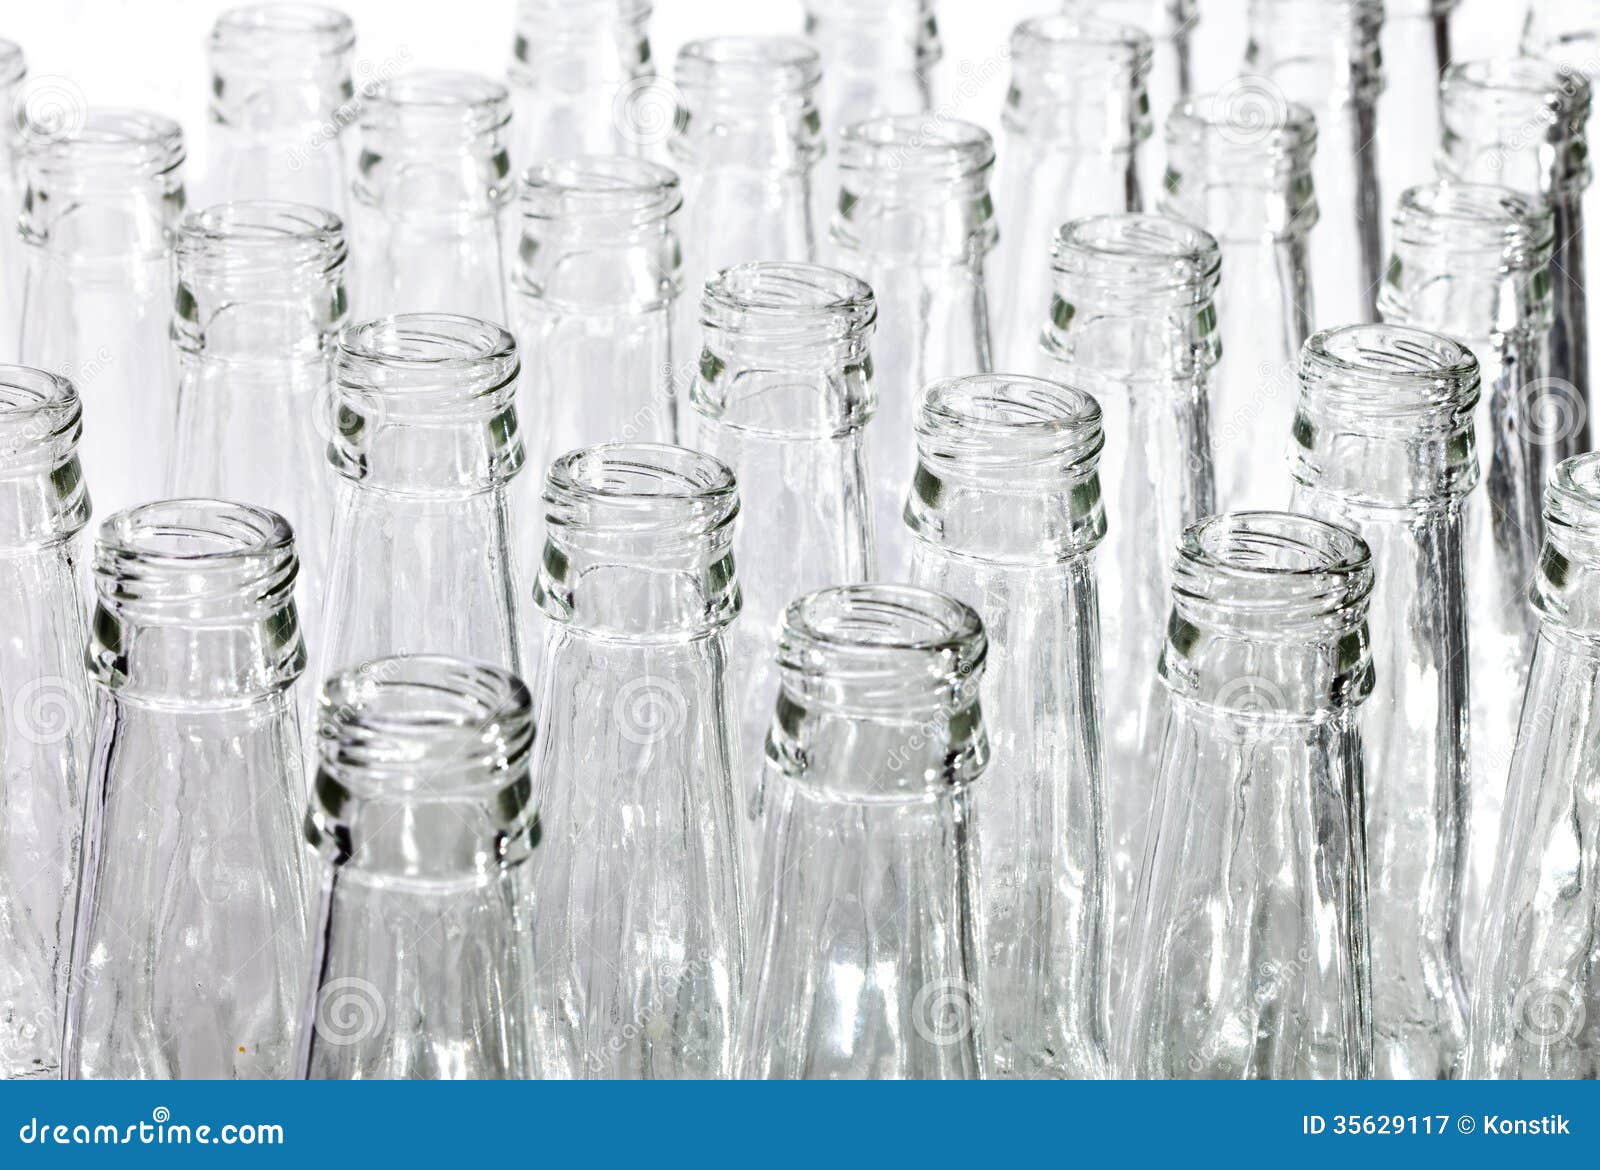 Пустую бутылку на стол не ставят. Фон под пустые стеклянные бутылки в IPG. Изображение на столе пустой бутылки стеклянной. Пустые бутылки ставим под стол. Ткань закрывает бутылку.